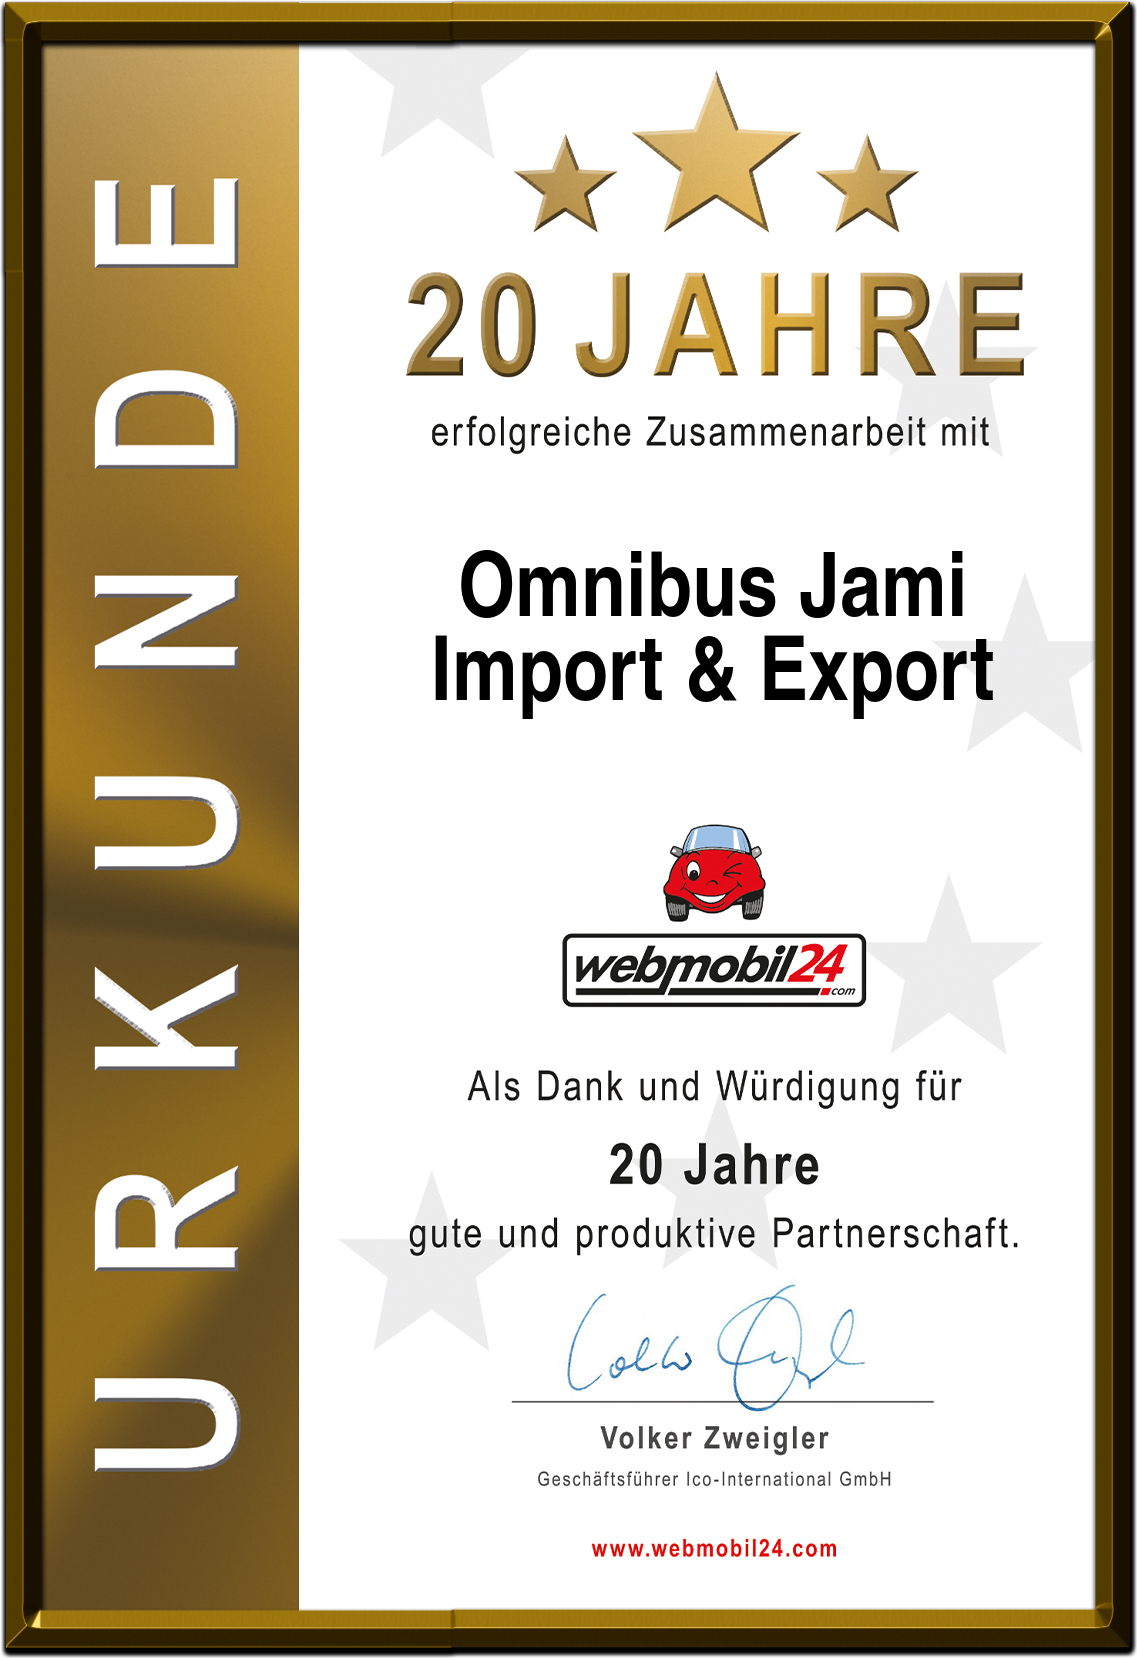 Omnibus JamiImport & Export